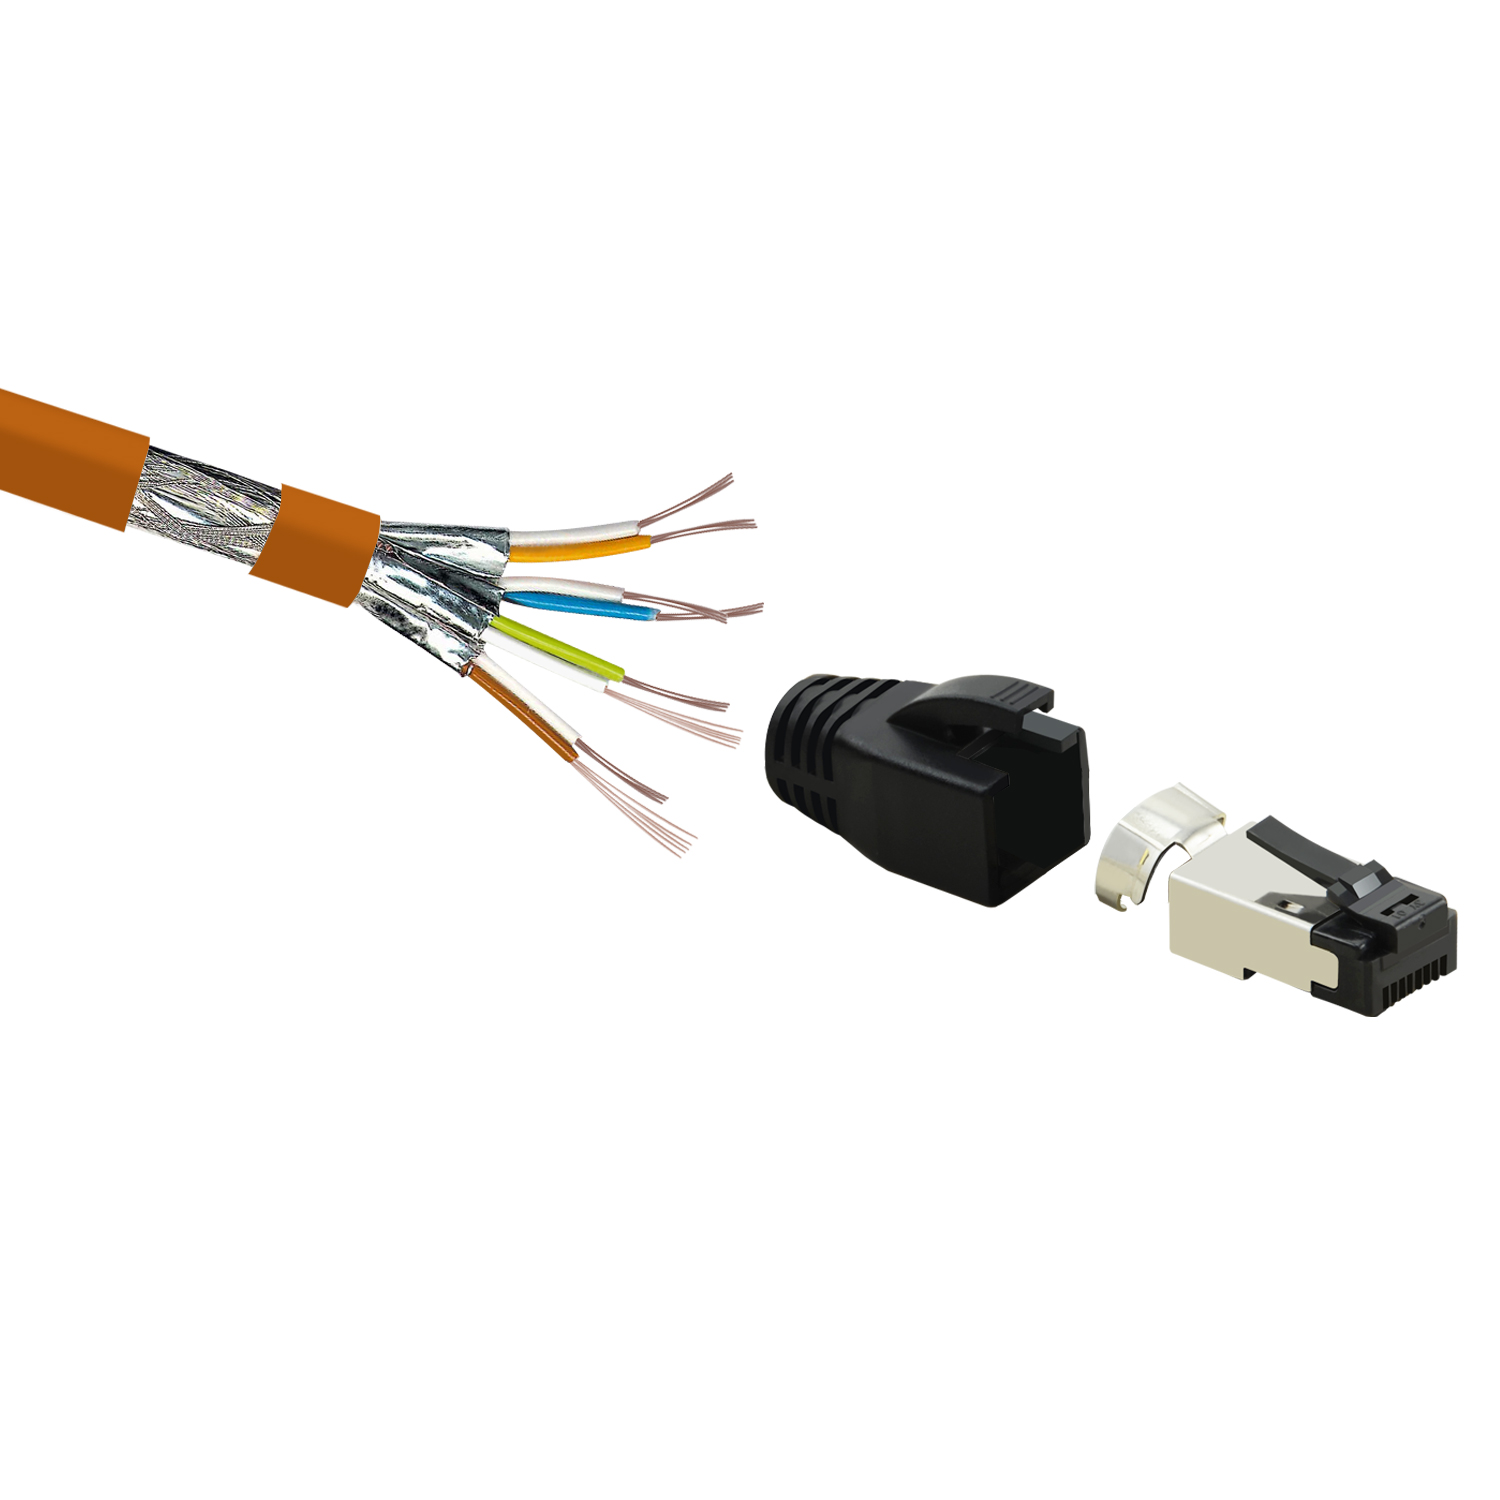 2m 40 Netzwerkkabel, orange, S/FTP m Patchkabel / GBit, 10er TPFNET Netzwerkkabel Pack 2